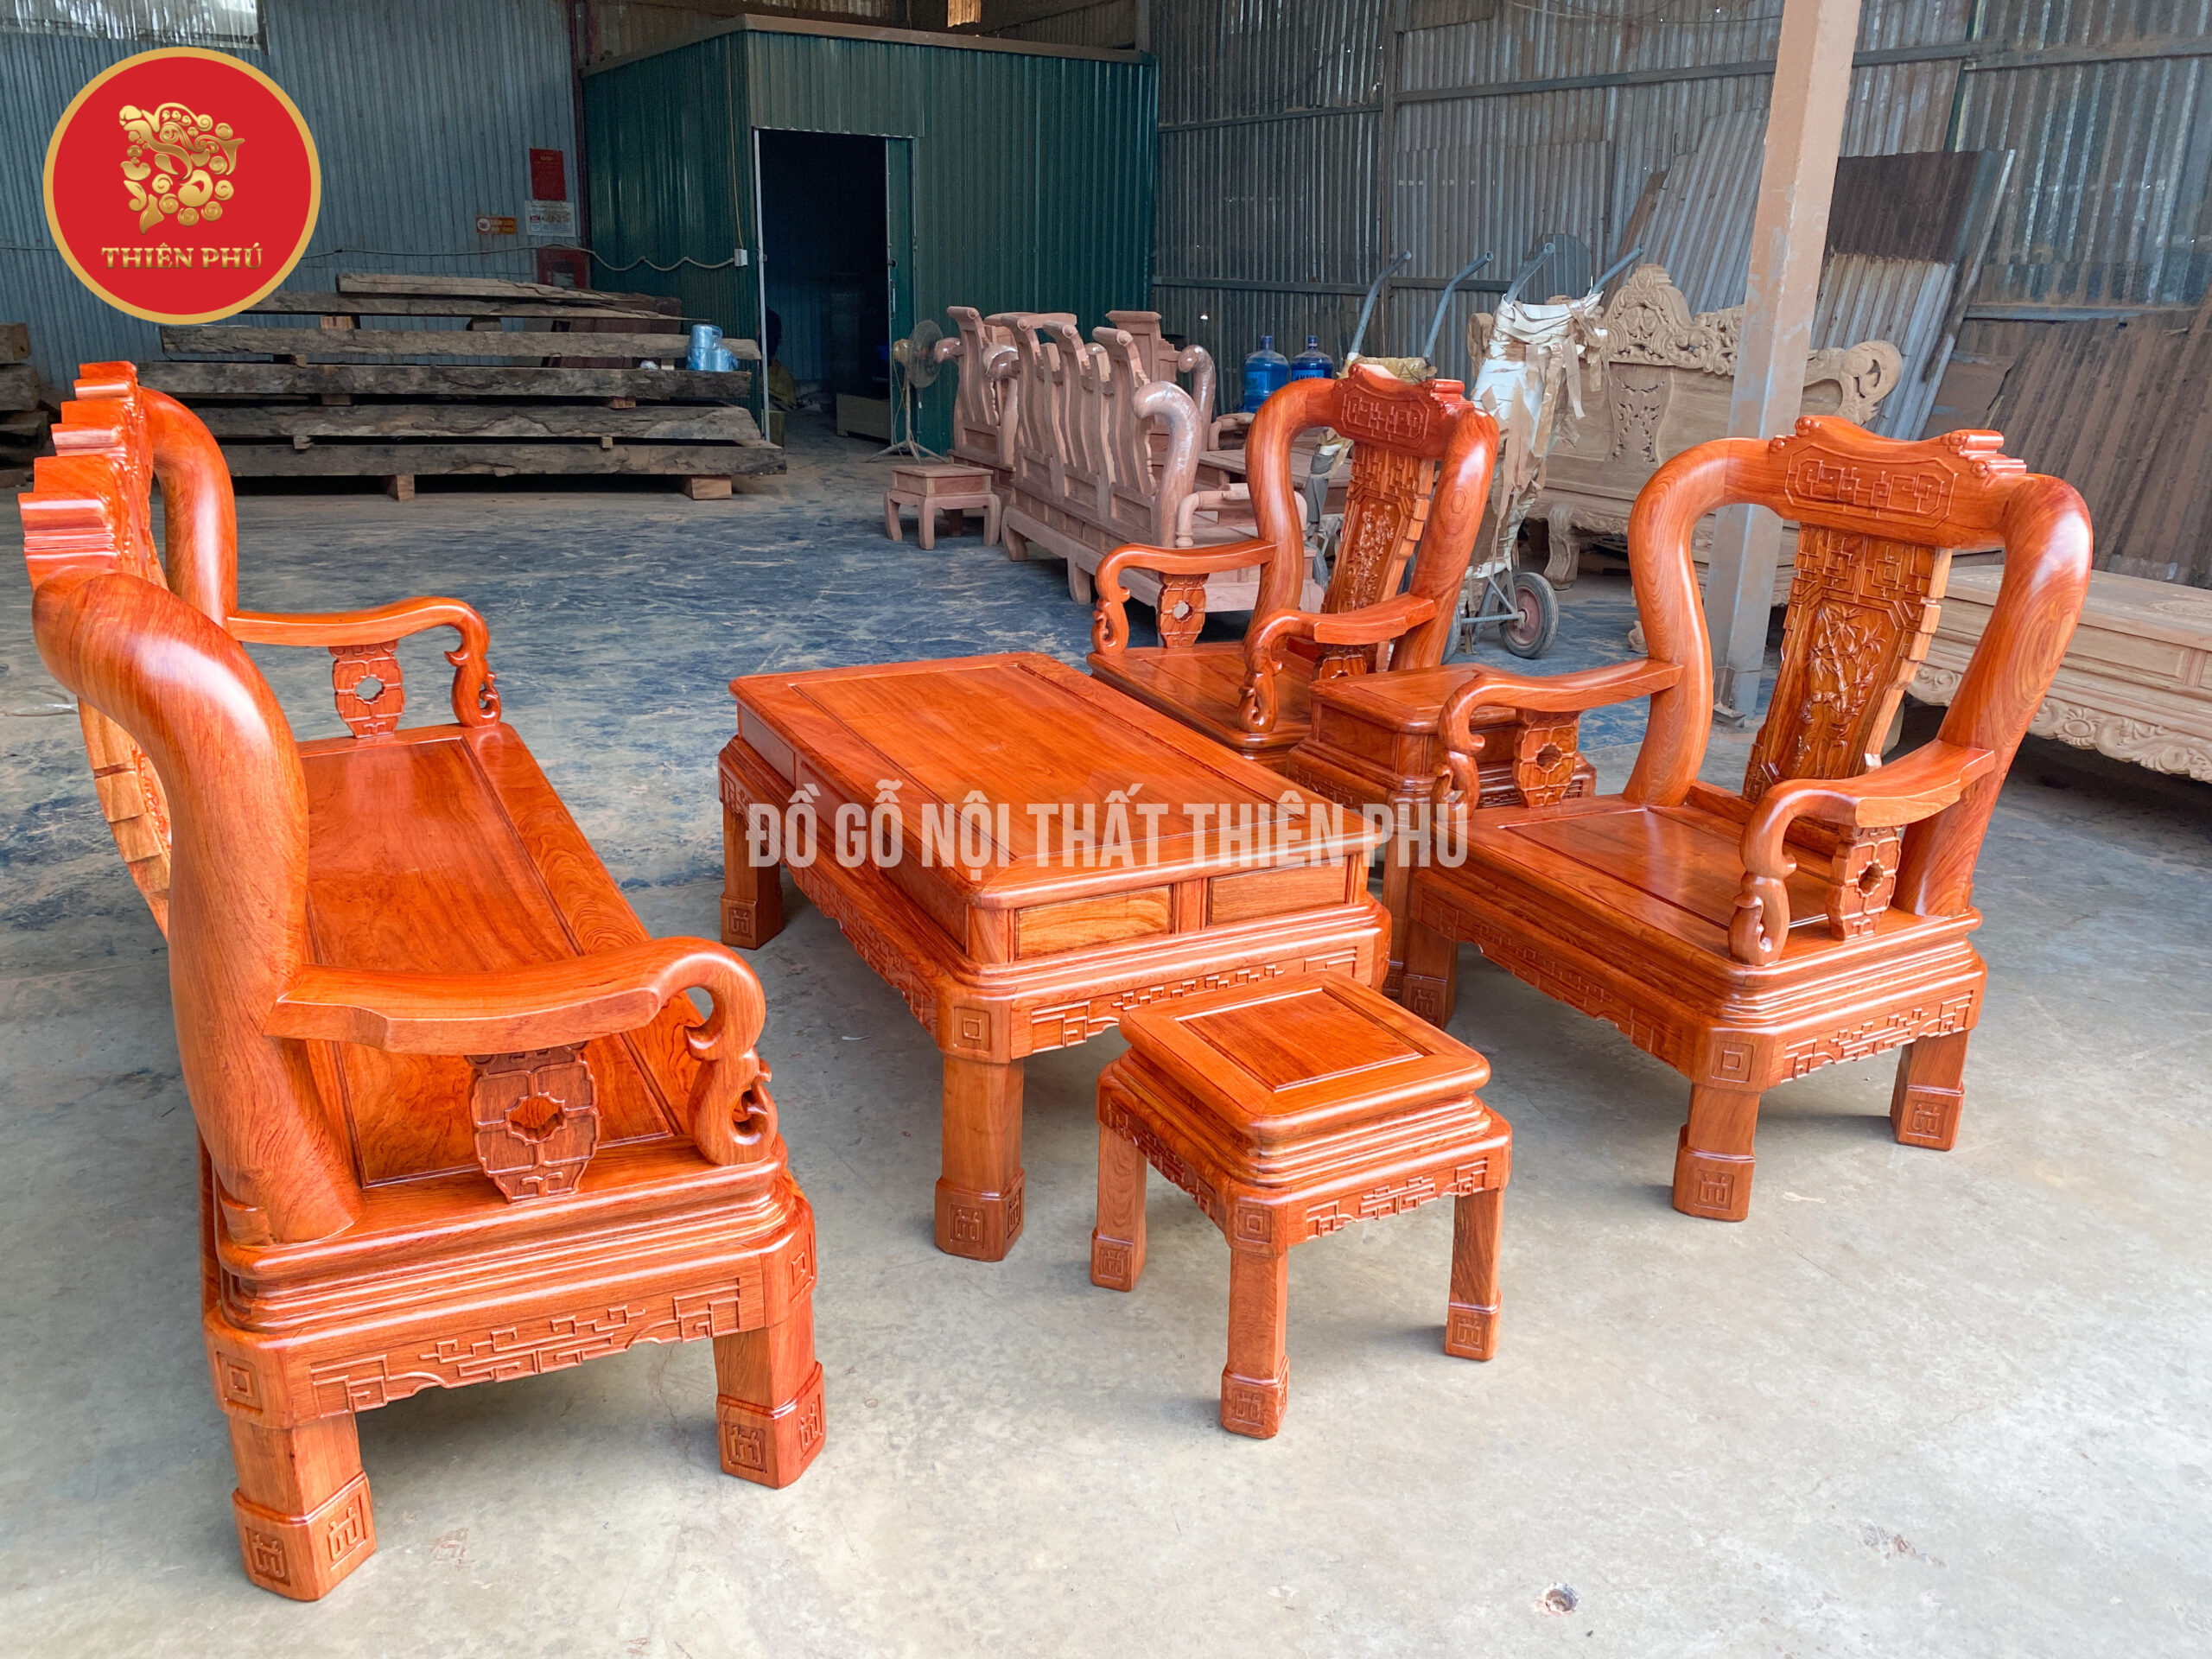 Đồ gỗ Thiên Phú - Đơn vị uy tín cung cấp bàn ghế gỗ Minh Quốc triện tay 12 giá tốt